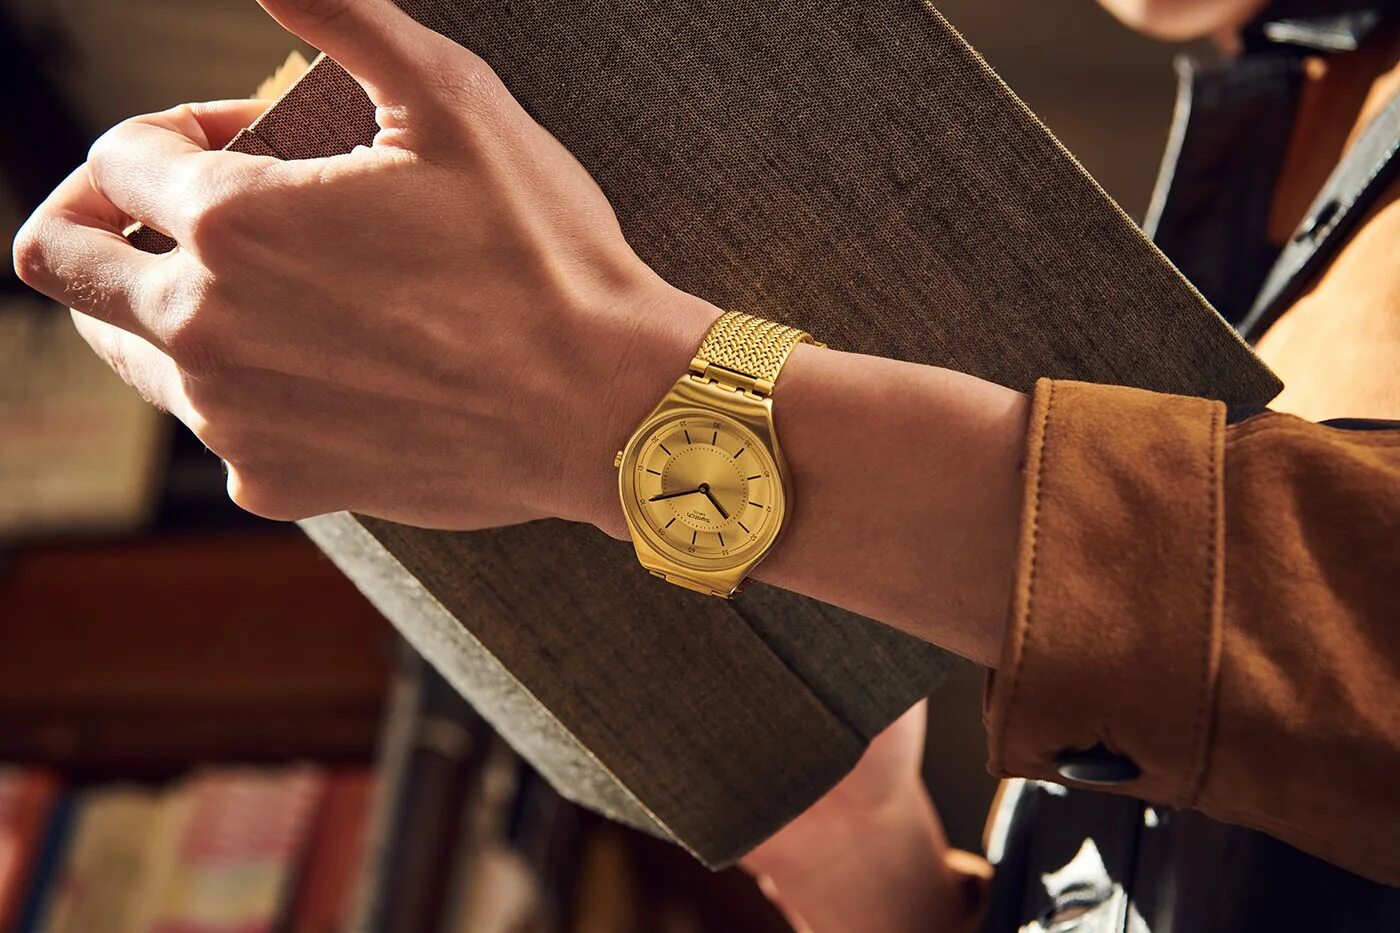 Honey watch. Zenith Swatch золотой. Часы Swatch женские золотистые. Ywg409m Swatch. Часы Swatch мужские в золотом цвете.